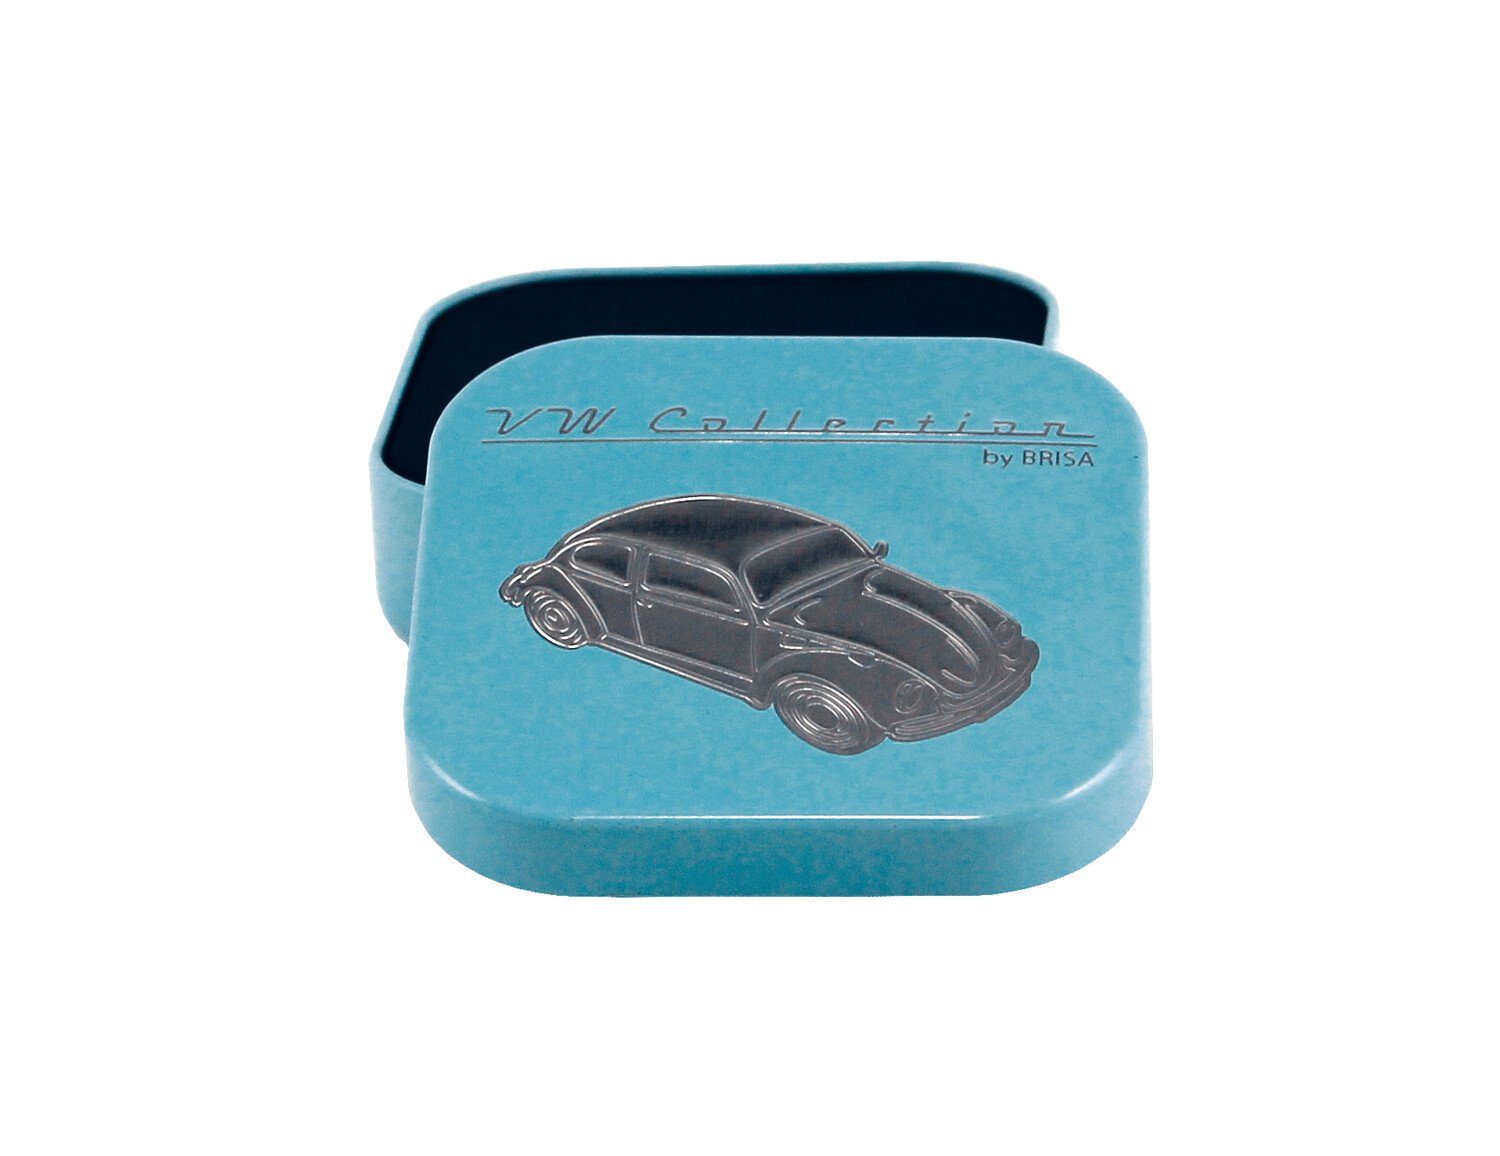 Softemaille/Vernickelt aus Blau, Schlüsselring in by BRISA Käfer VW Collection Metall, Schlüsselanhänger VW